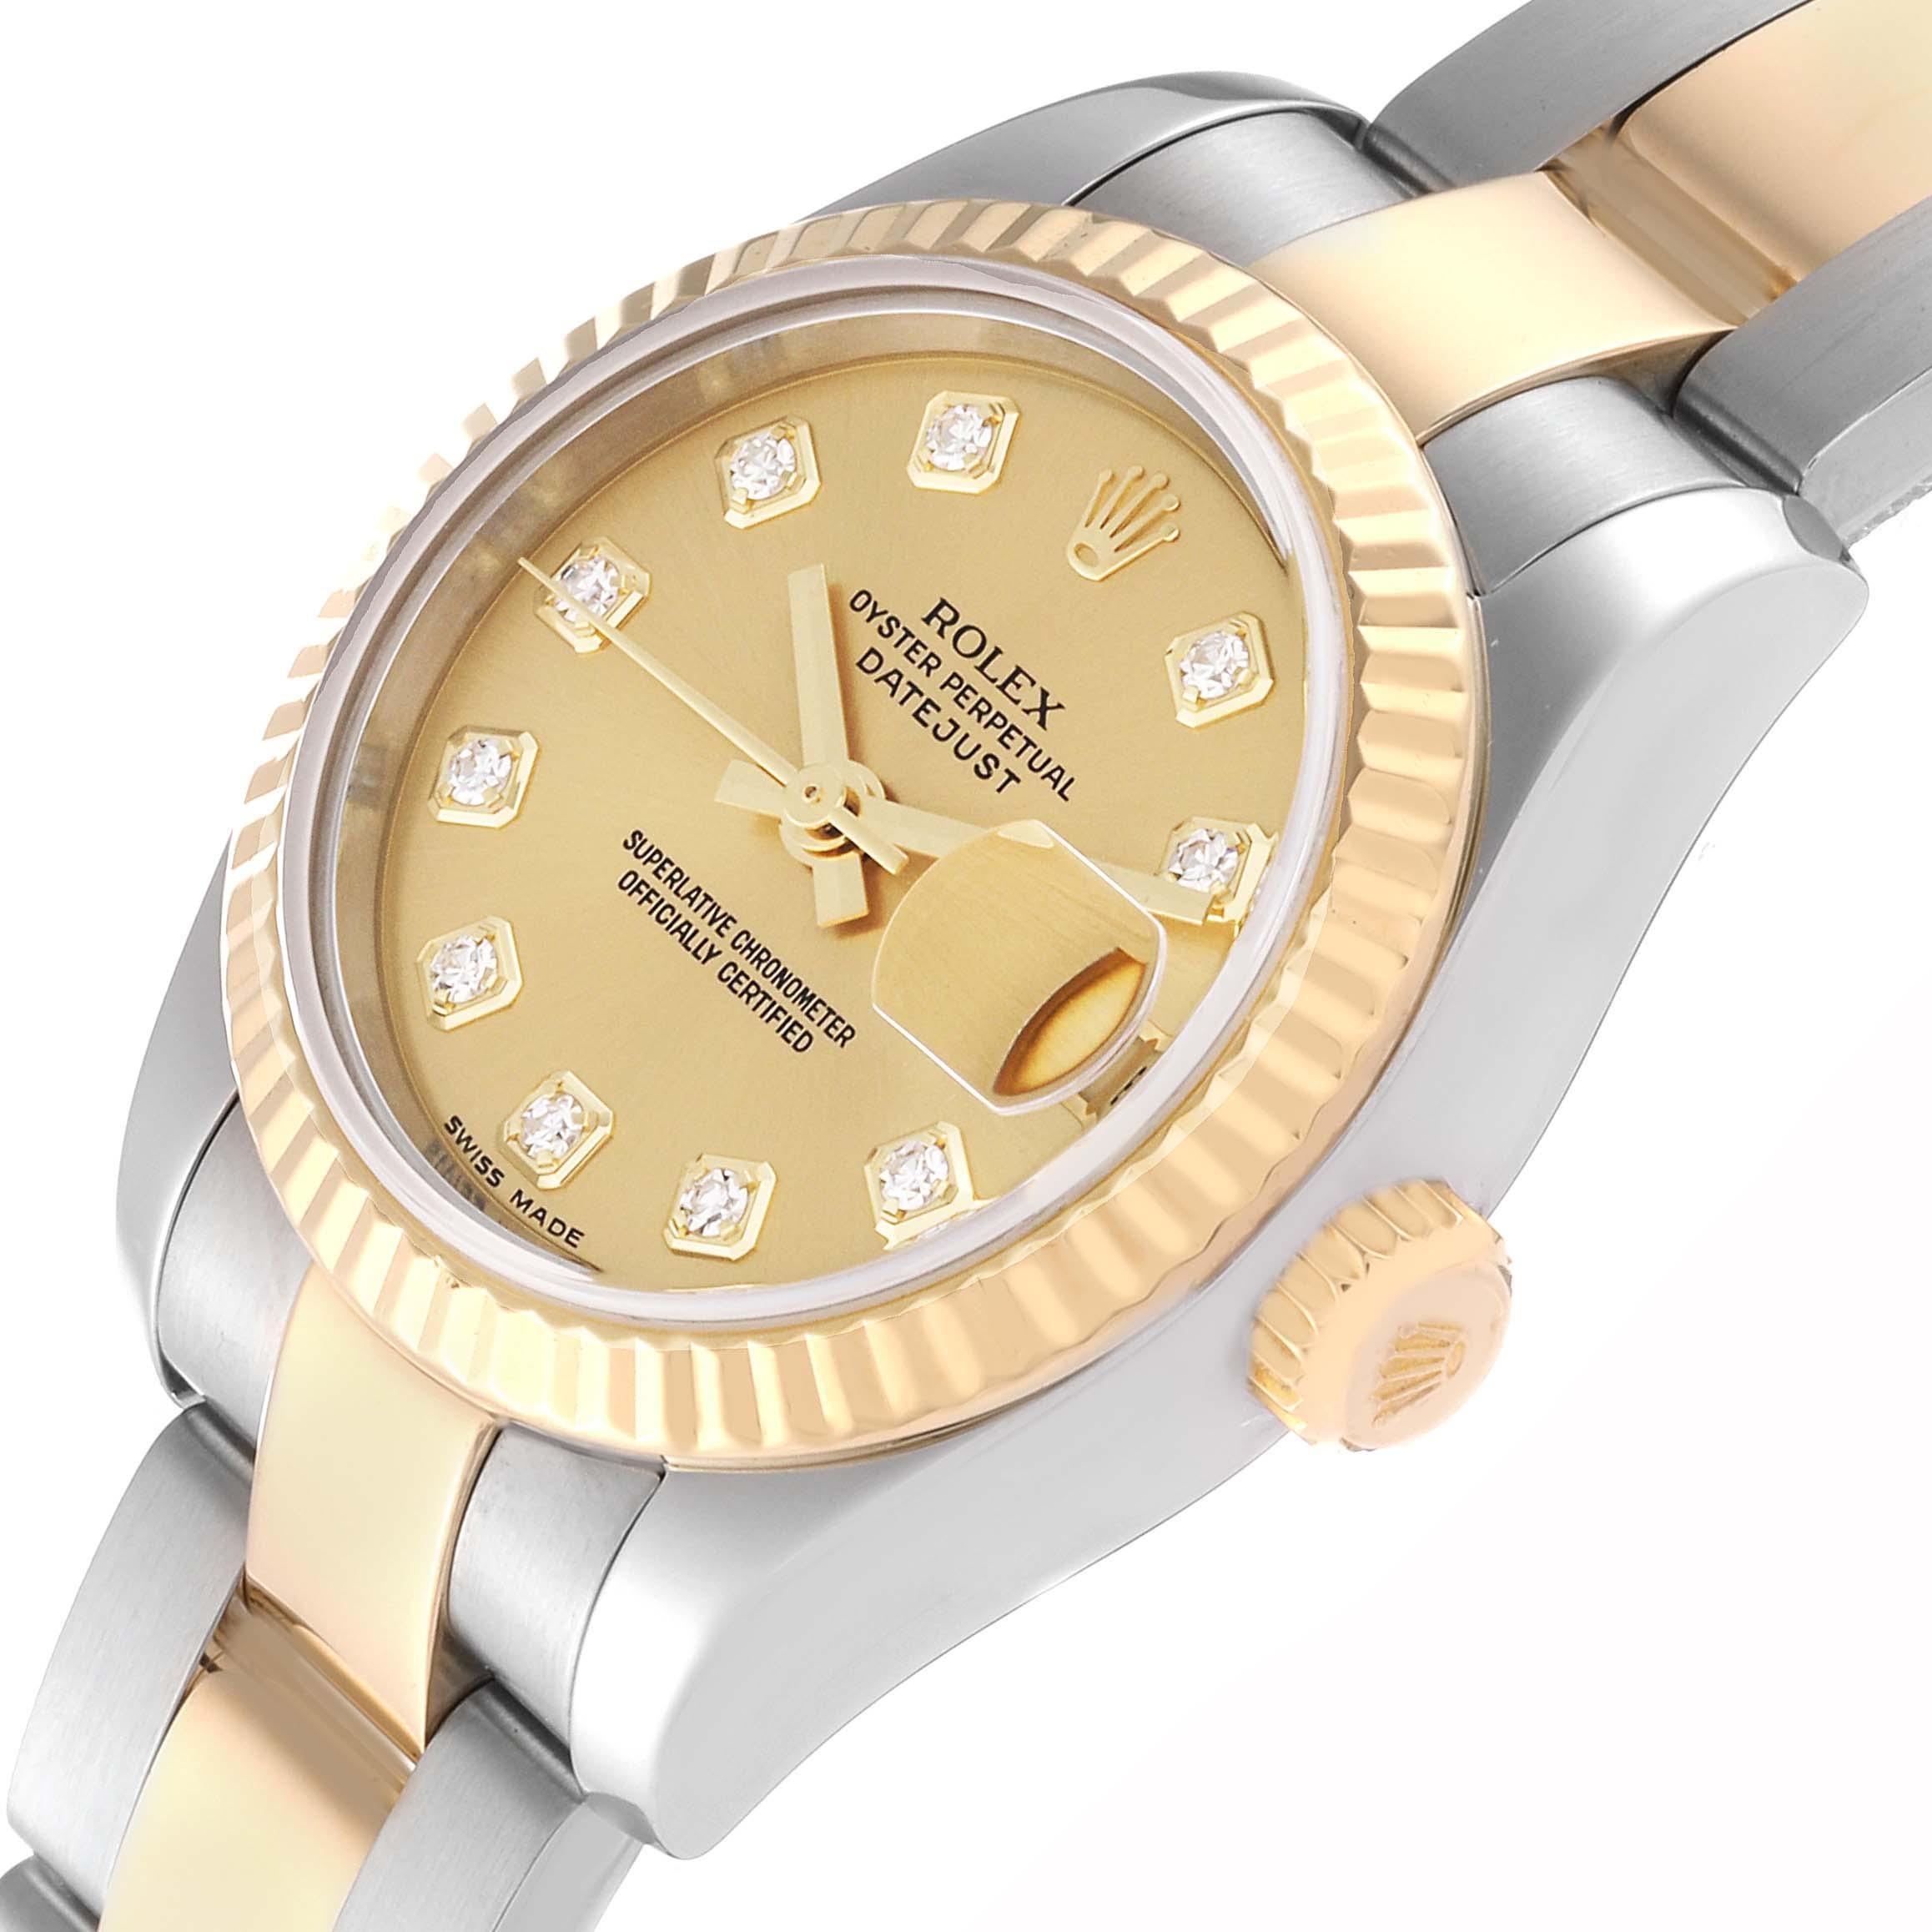 Rolex Datejust Diamond Dial Steel Yellow Gold Ladies Watch 179173 Box Papers. Mouvement automatique à remontage automatique, officiellement certifié chronomètre. Boîtier oyster en acier inoxydable de 26 mm de diamètre. Logo Rolex sur une couronne en